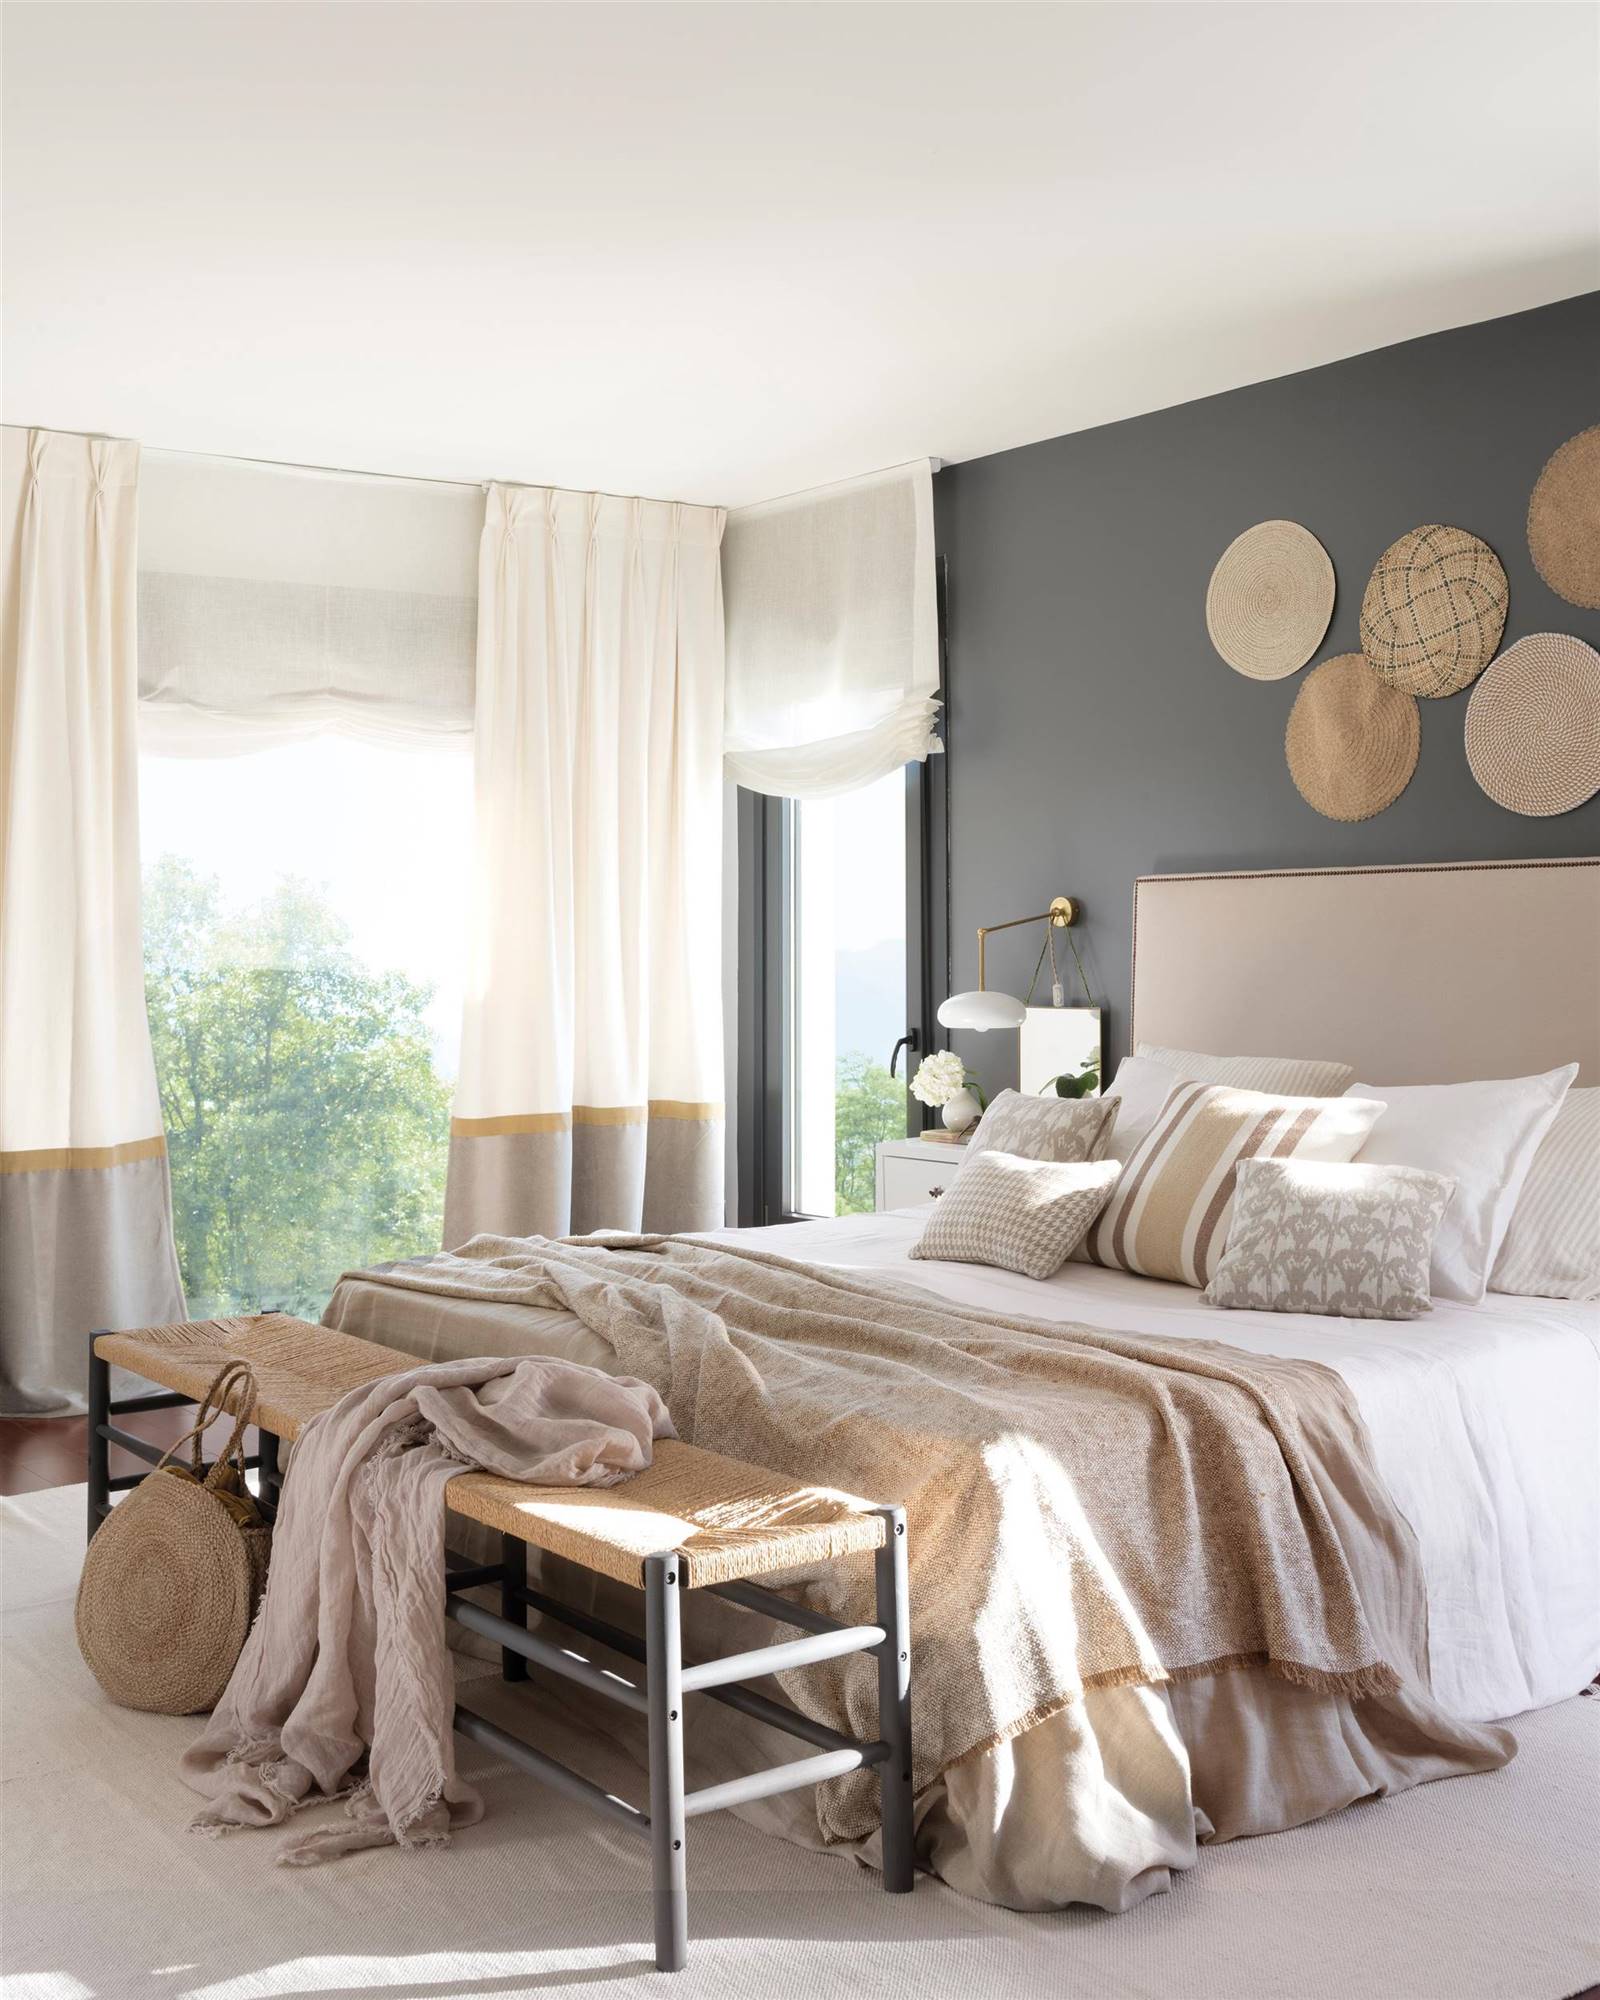 Dormitorio de la interiorista Paula Duarte con pared de cabecero pintada de gris y decorada con individuales.